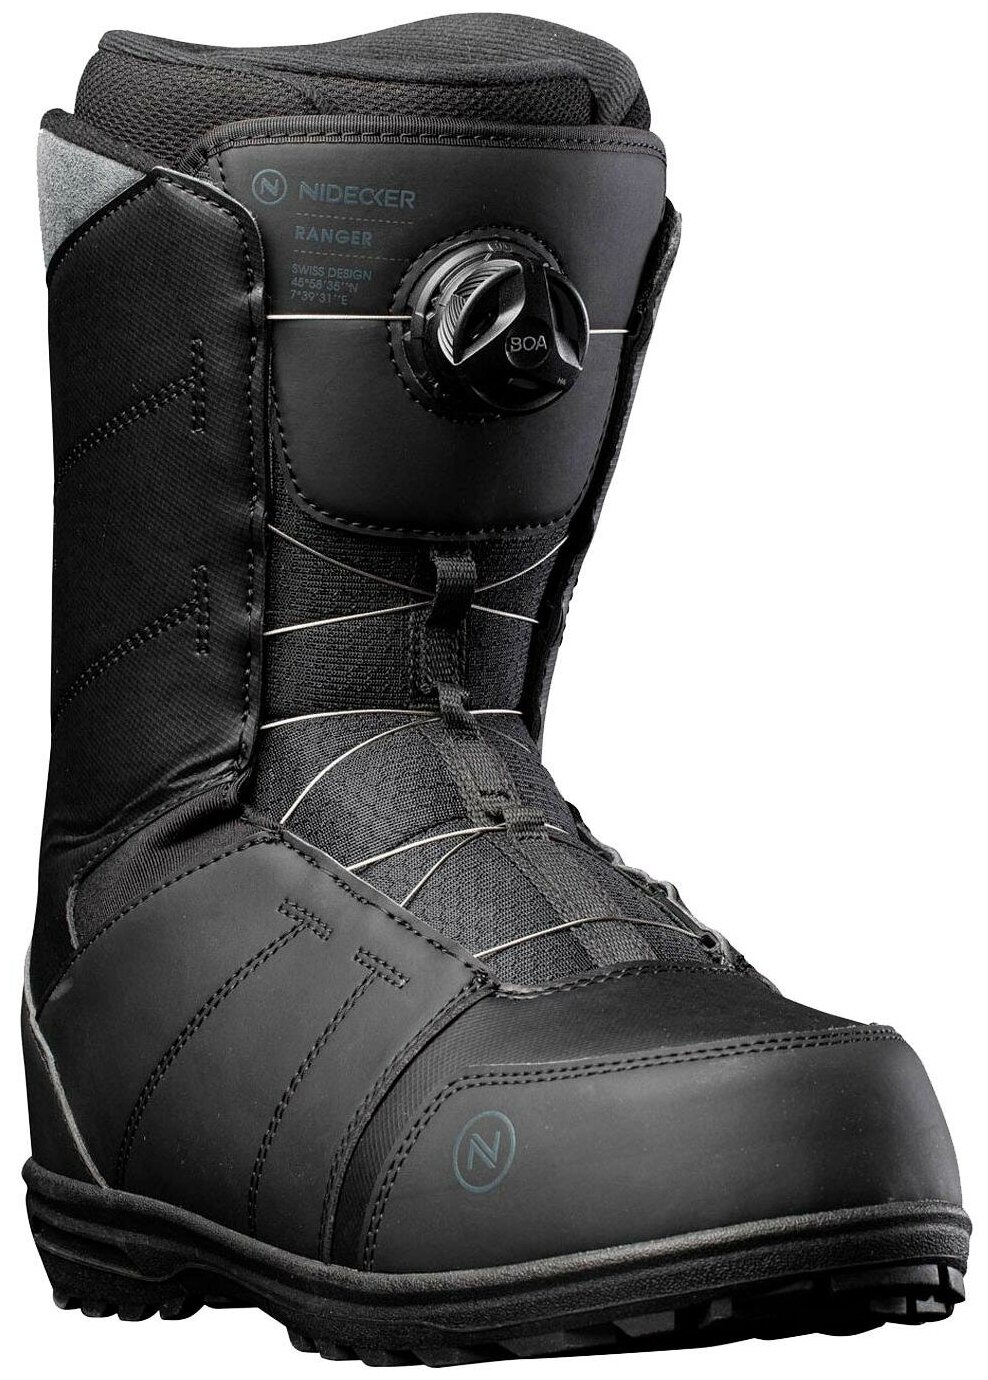 Ботинки для сноуборда NIDECKER Ranger Black (US:8,5)